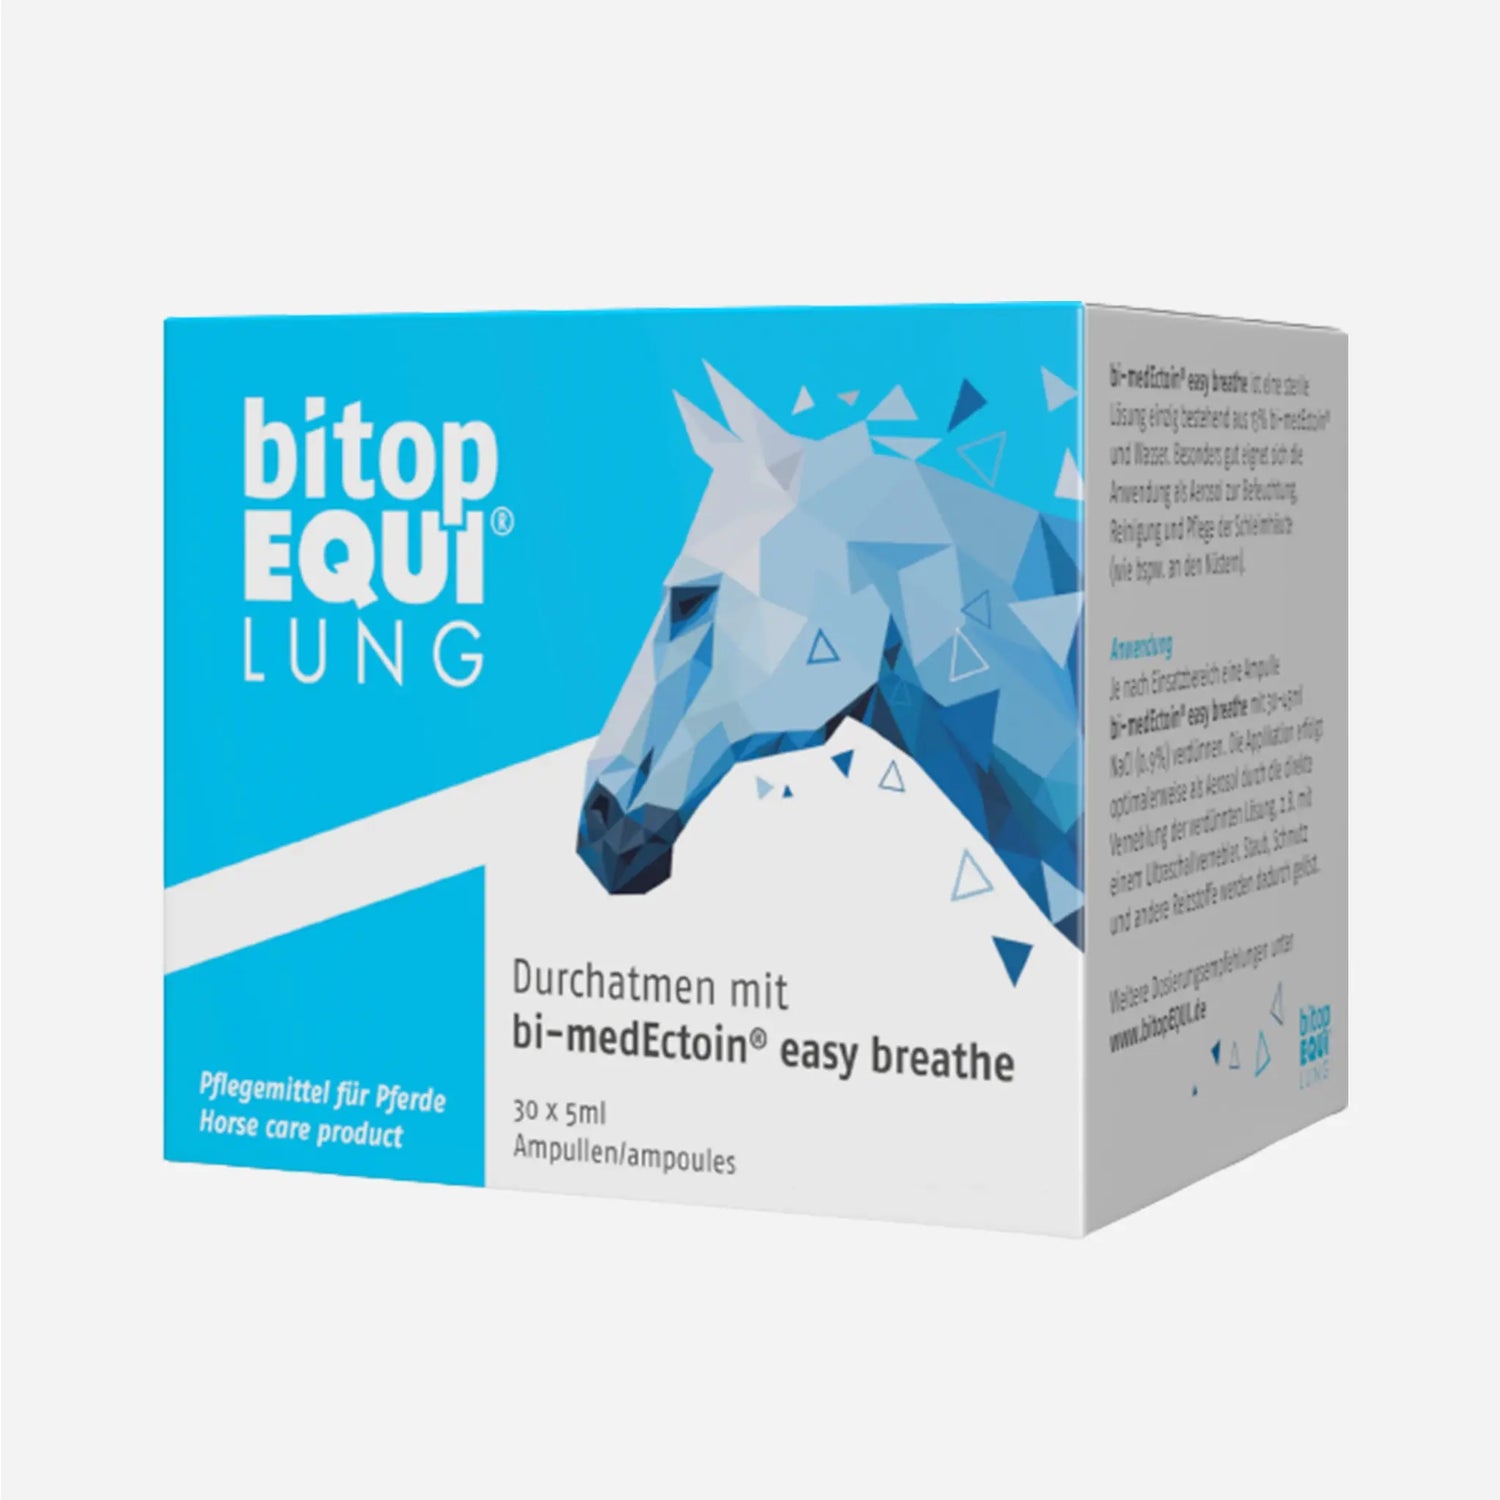 bi-medEctoin® easy breathe | Inhalation für Pferde | PEGASALT